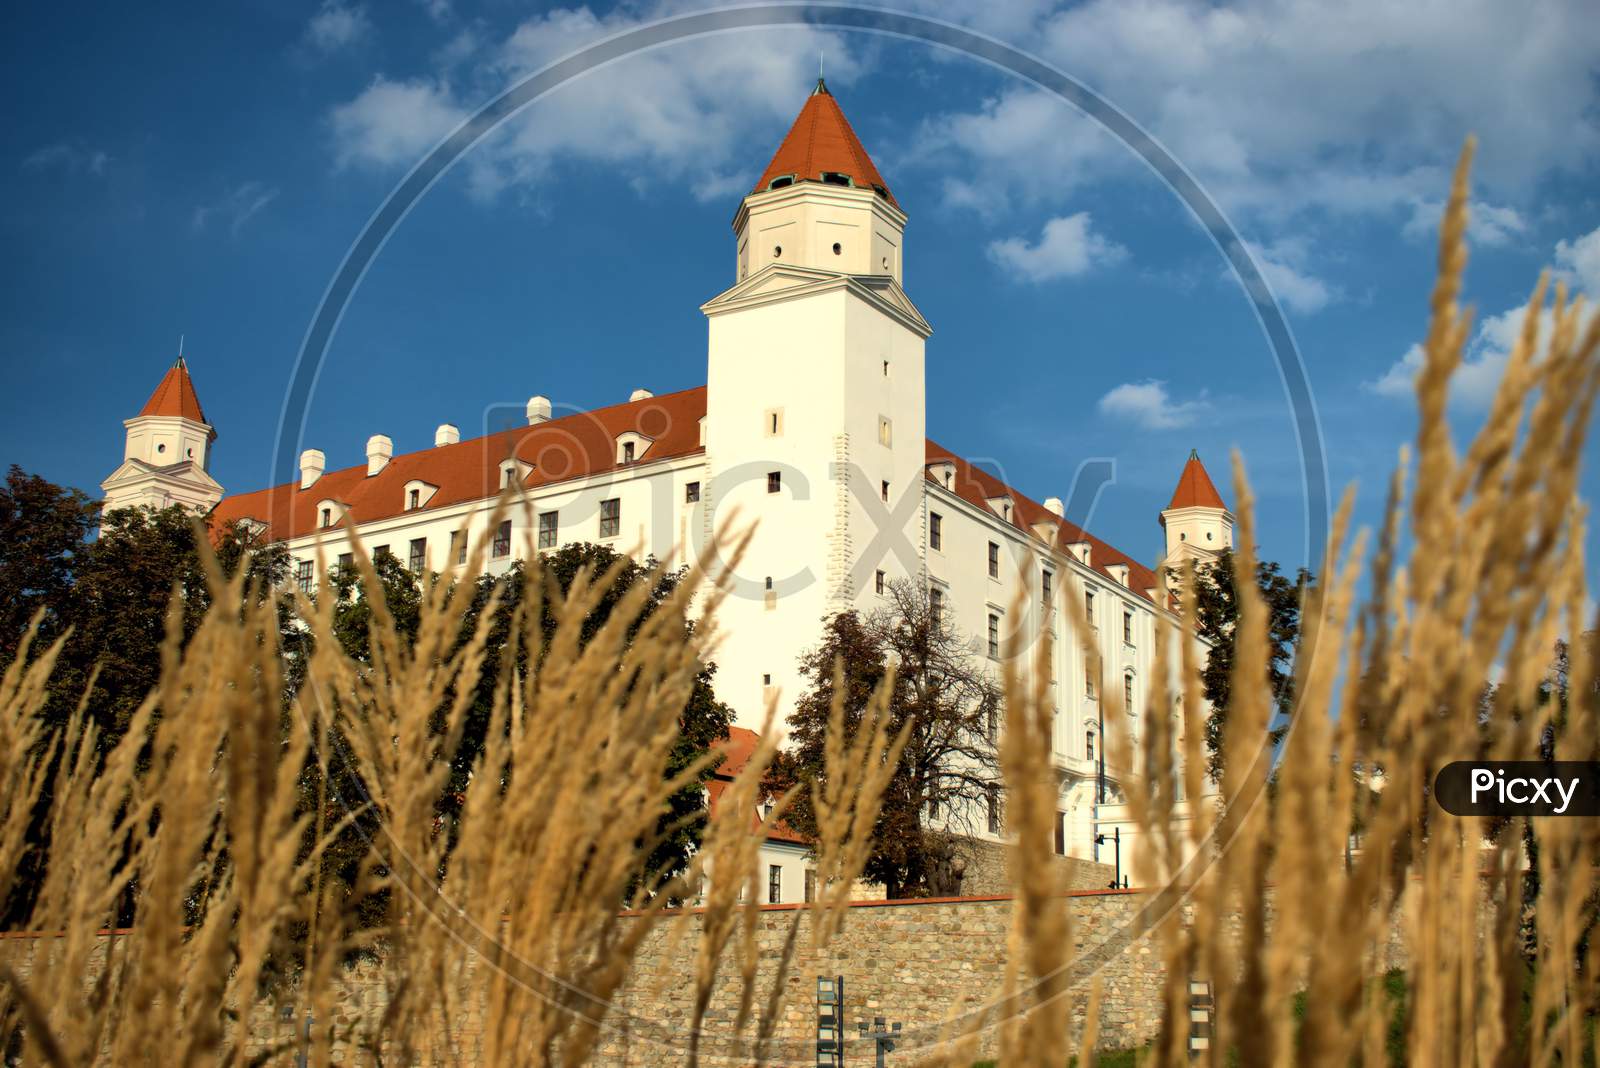 Bratislava castle in Slovakia 11.9.2020